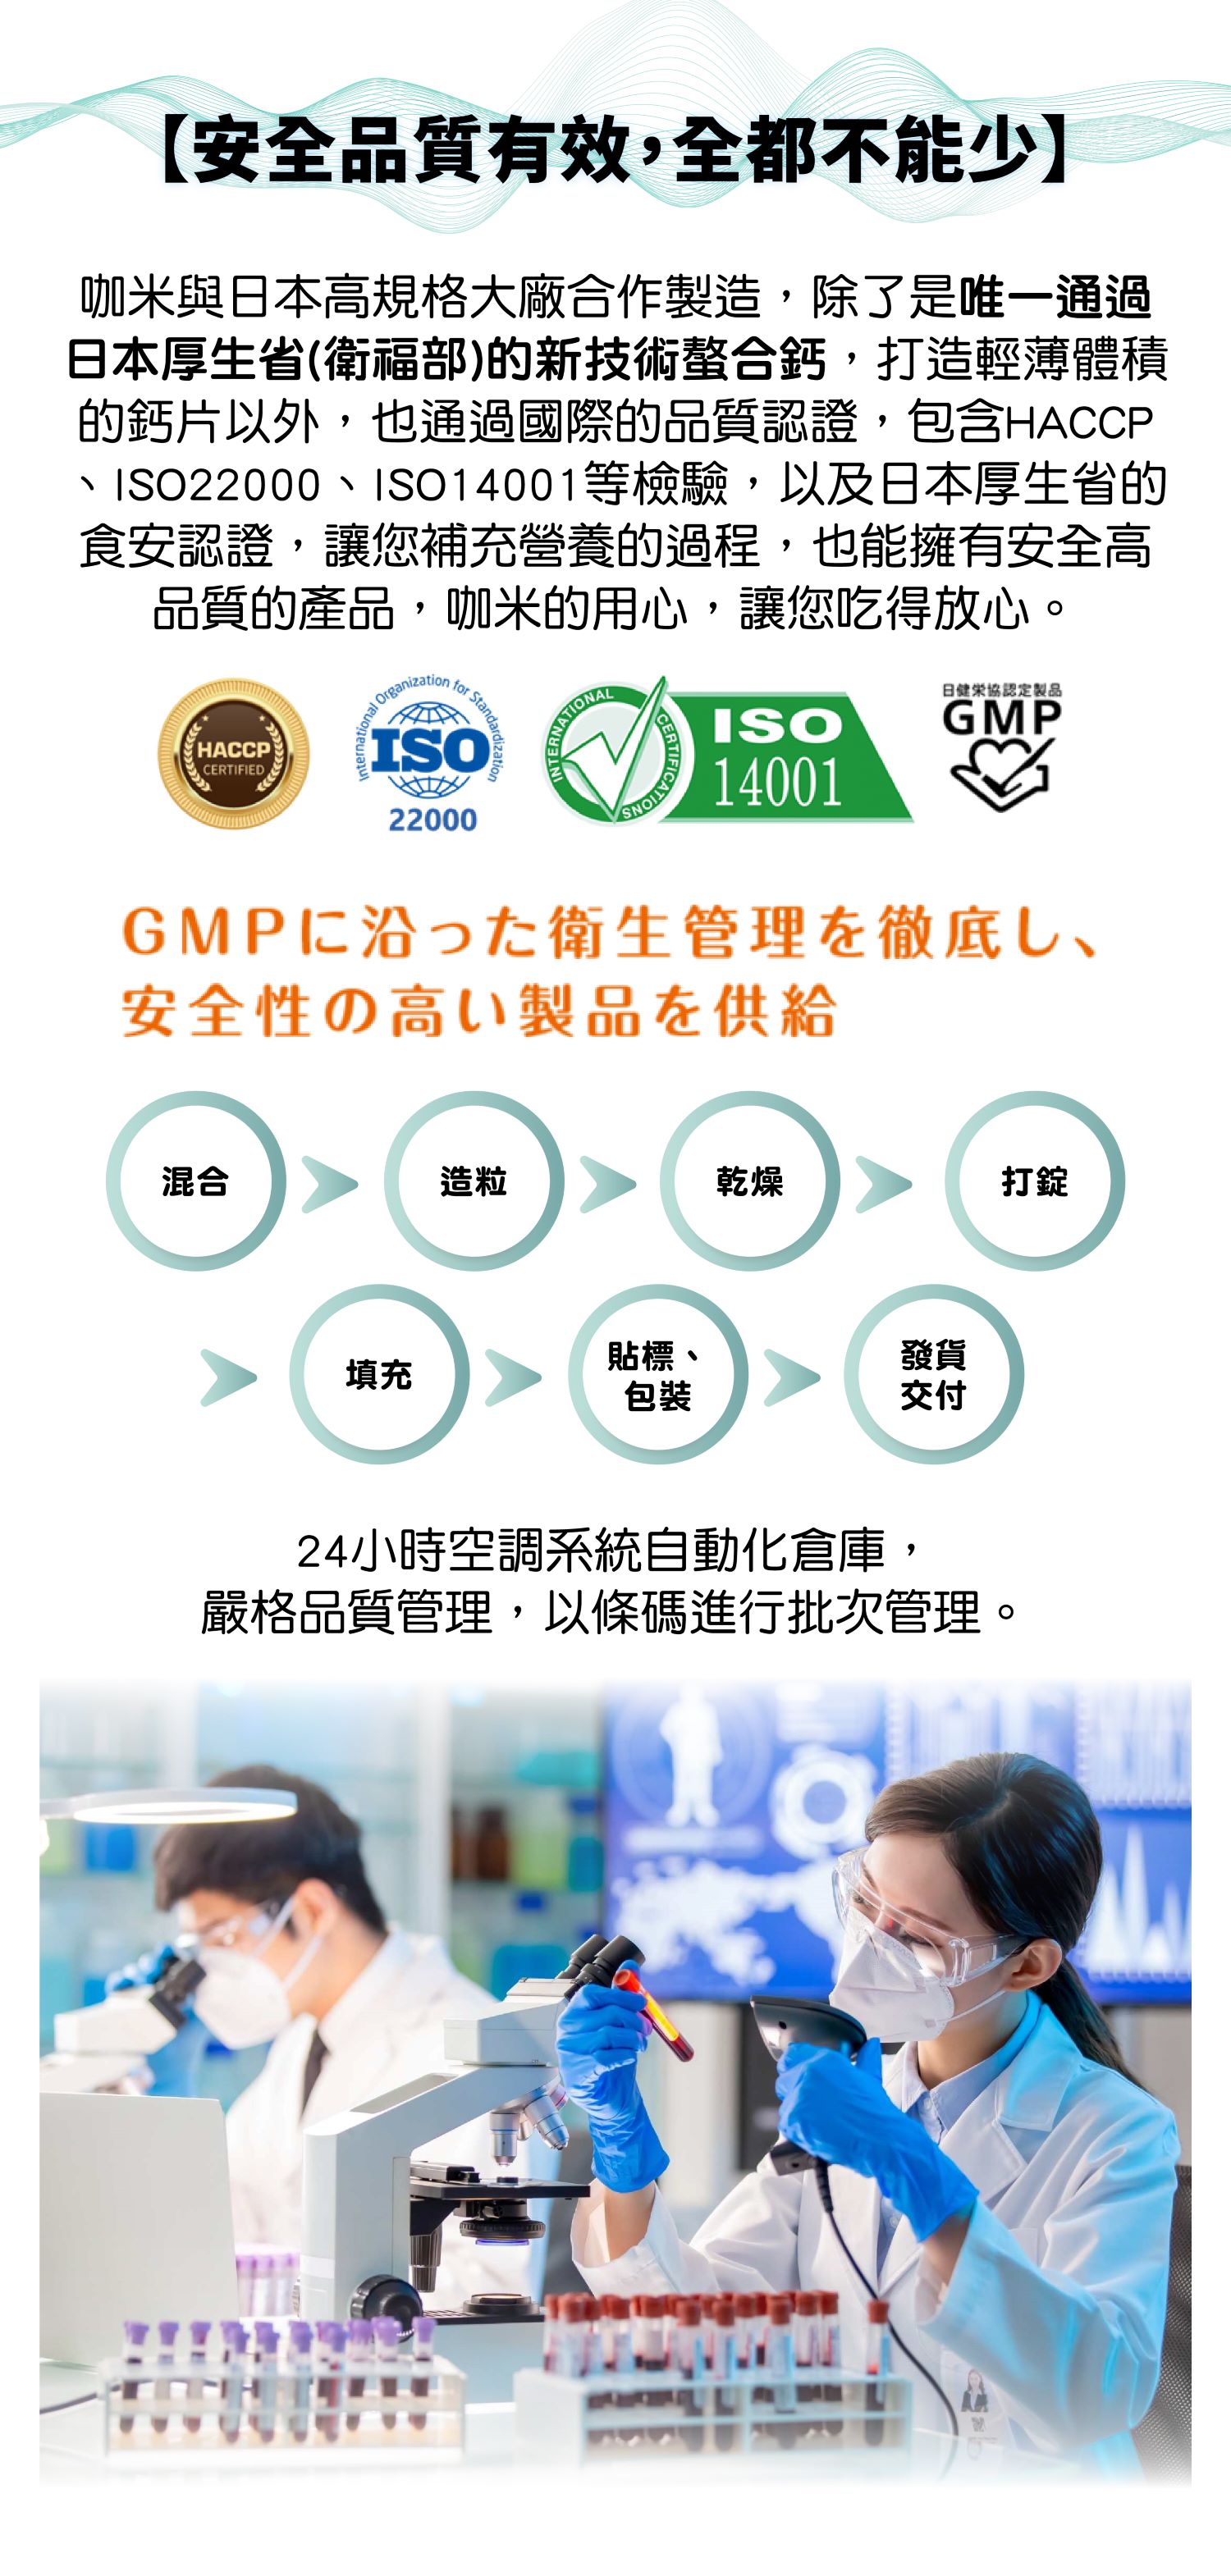 【安全品質有效，全都不能少】   咖米與日本高規格大廠合作製造，除了是唯一通過日本厚生省(衛福部)的新技術螯合鈣，打造輕薄體積的鈣片以外，也通過國際的品質認證，包含HACCP、ISO22000、ISO14001等檢驗，以及日本厚生省的食安認證，讓您補充營養的過程，也能擁有安全高品質的產品，咖米的用心，讓您吃得放心。   